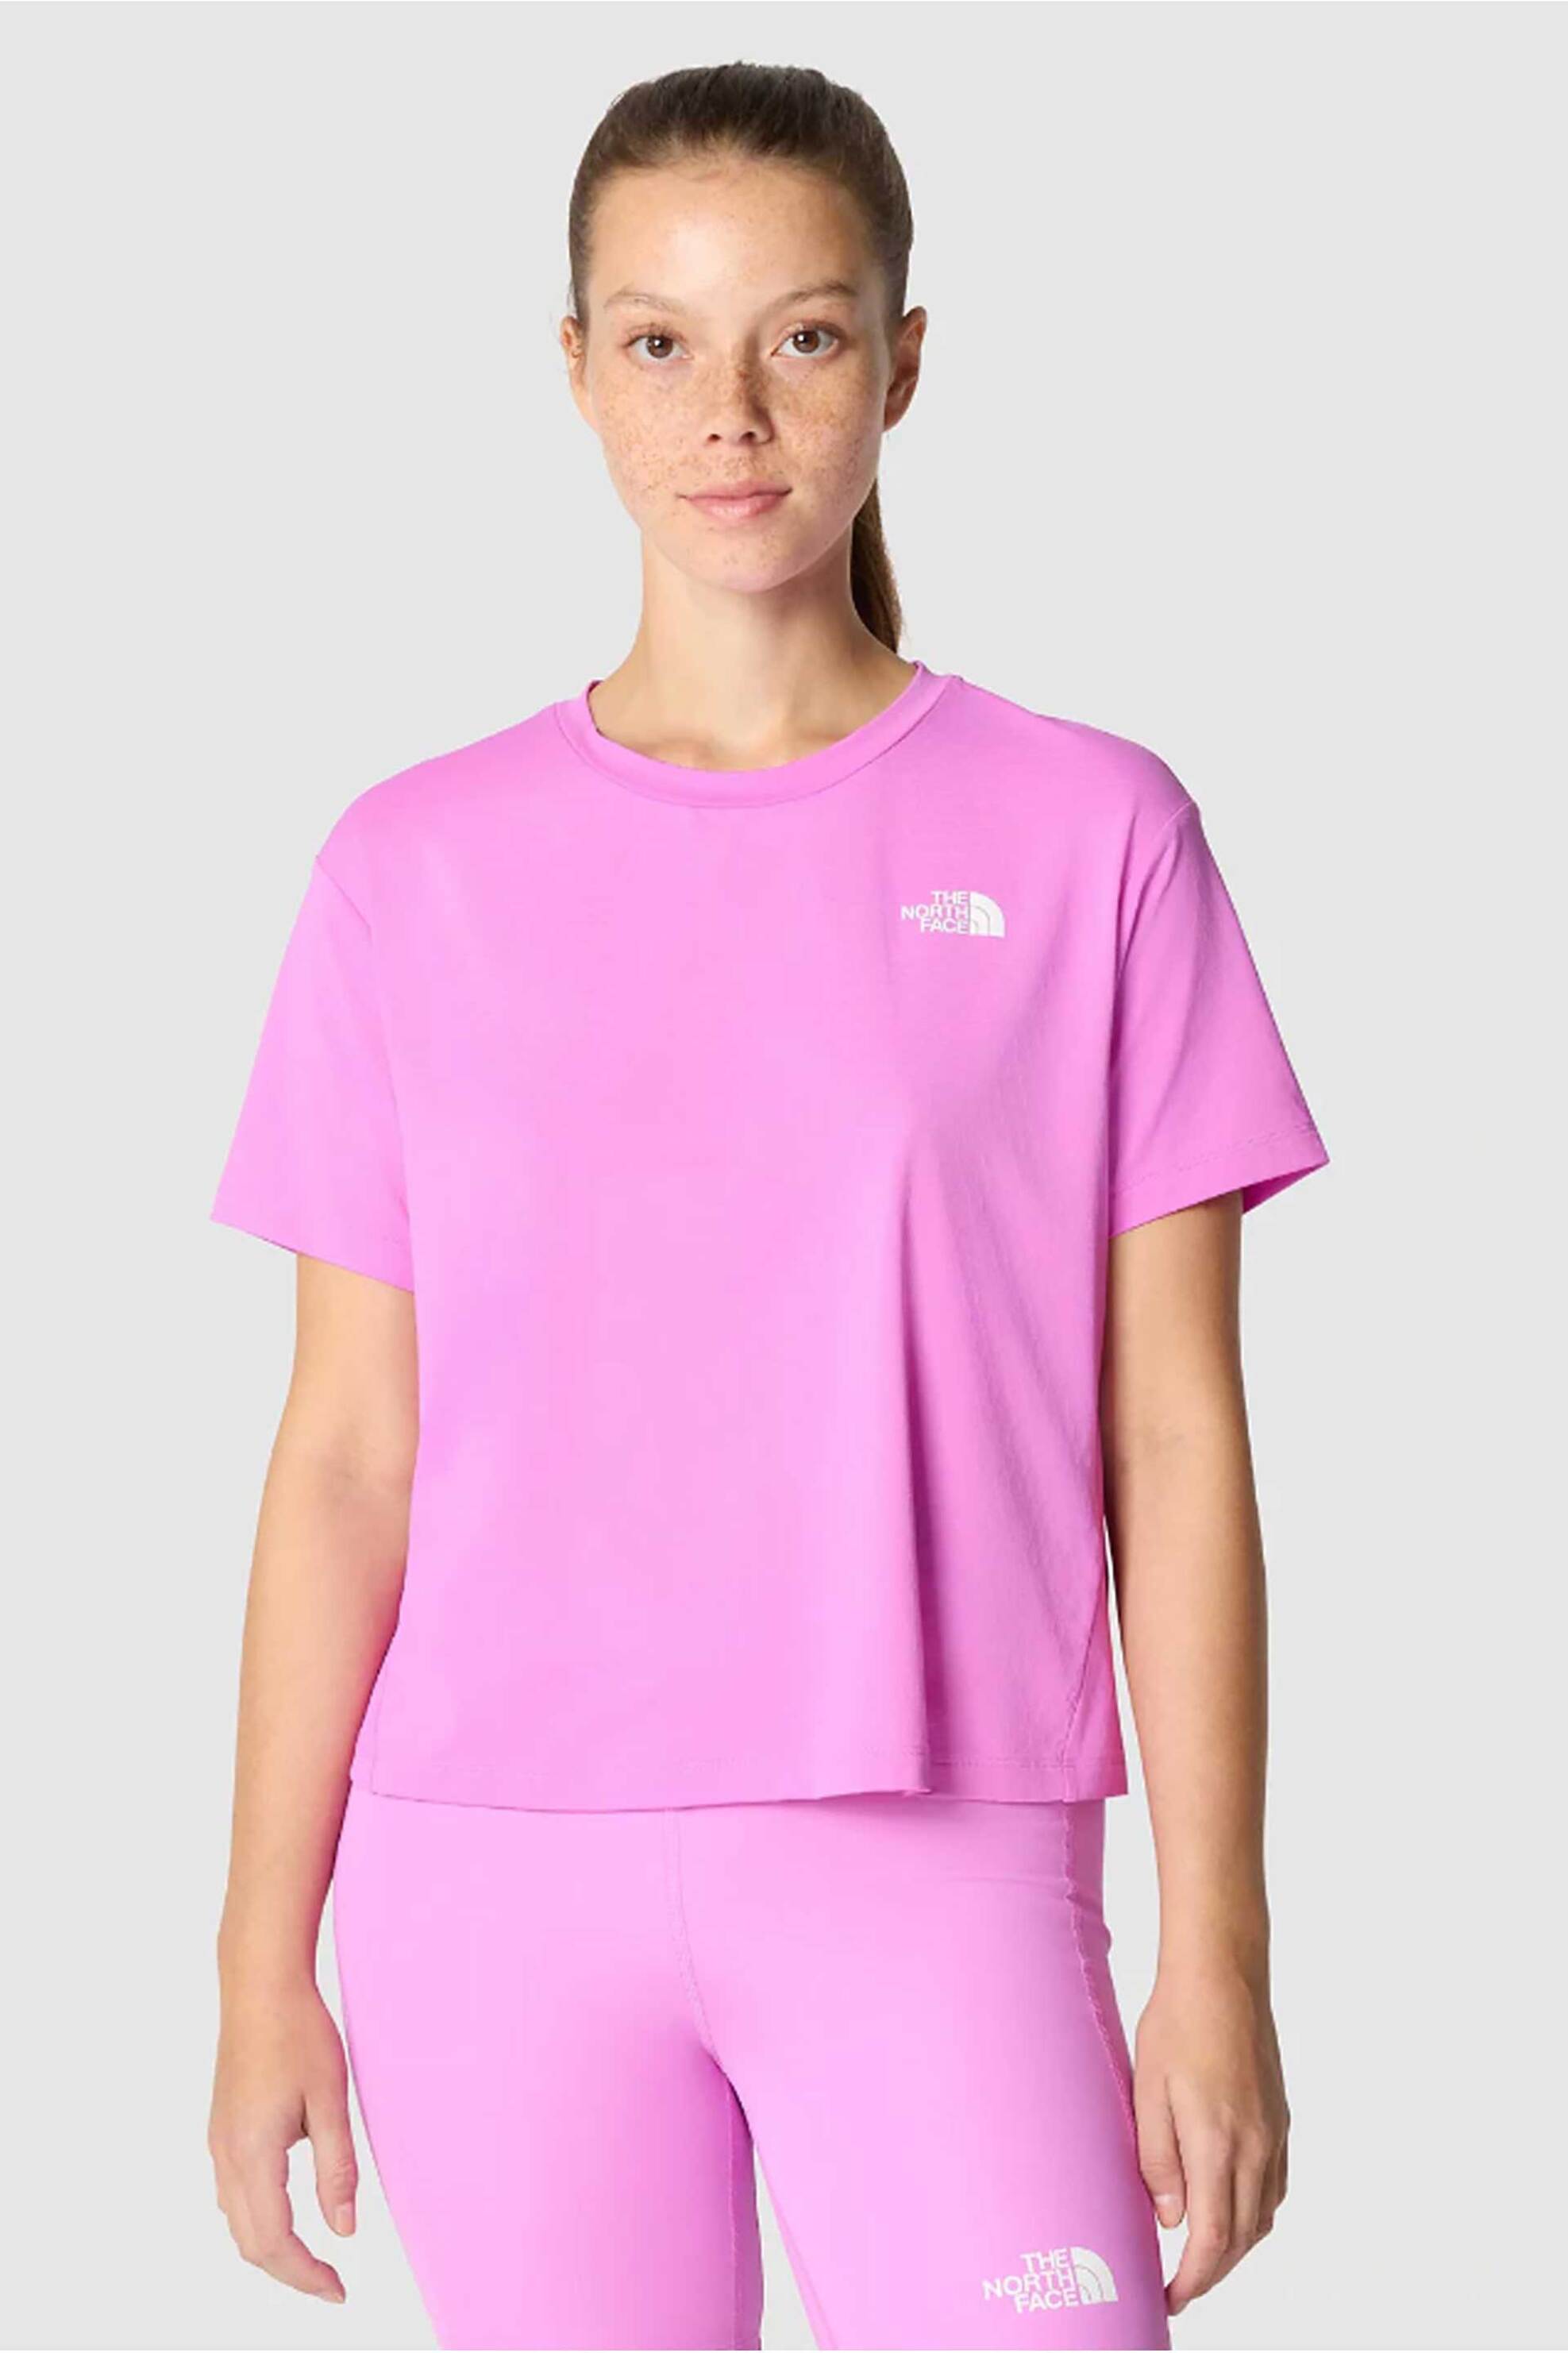 Γυναικεία Ρούχα & Αξεσουάρ > Γυναικεία Ρούχα > Γυναικεία Τοπ > Γυναικεία T-Shirts The North Face γυναικείο cropped T-shirt μονόχρωμο με contrast logo prints "Flex Circuit" - NF0A87JVQIX1 Ροζ